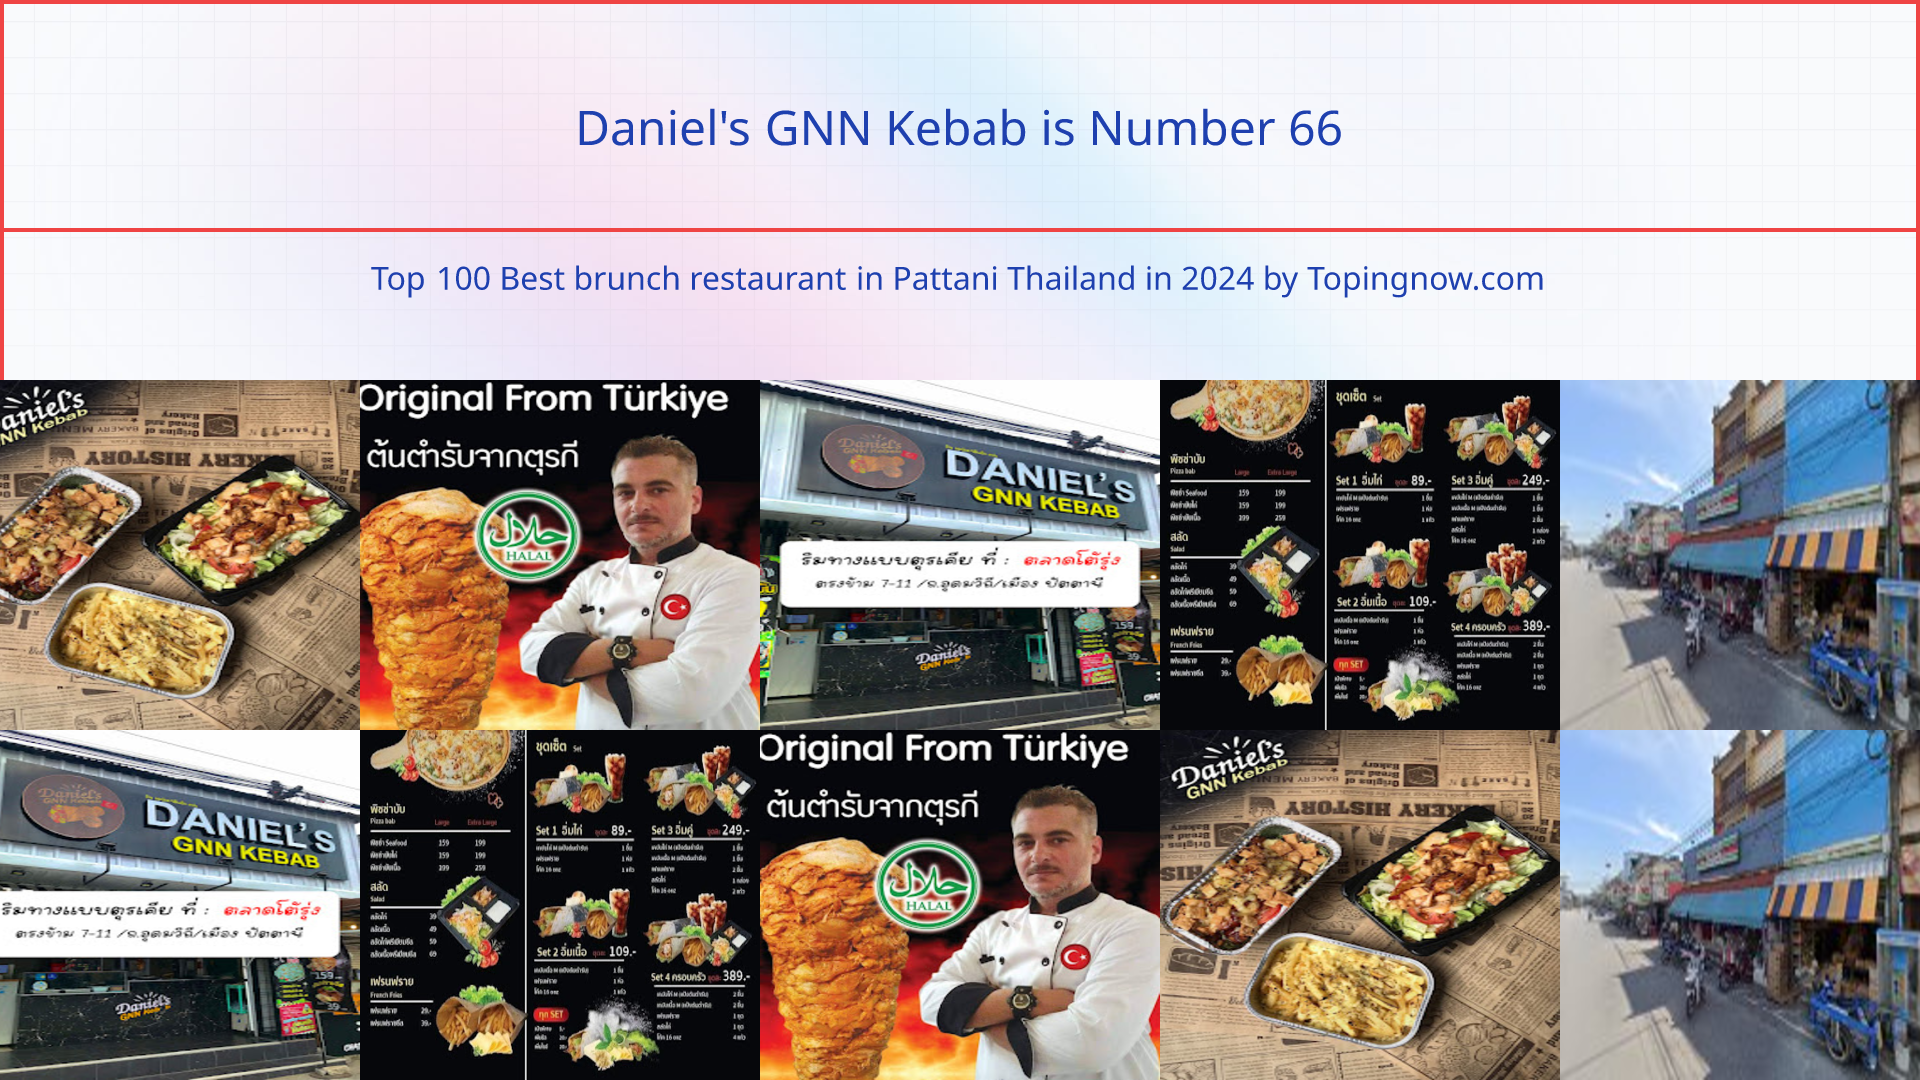 Daniel's GNN Kebab: Top 100 Best brunch restaurant in Pattani Thailand in 2024